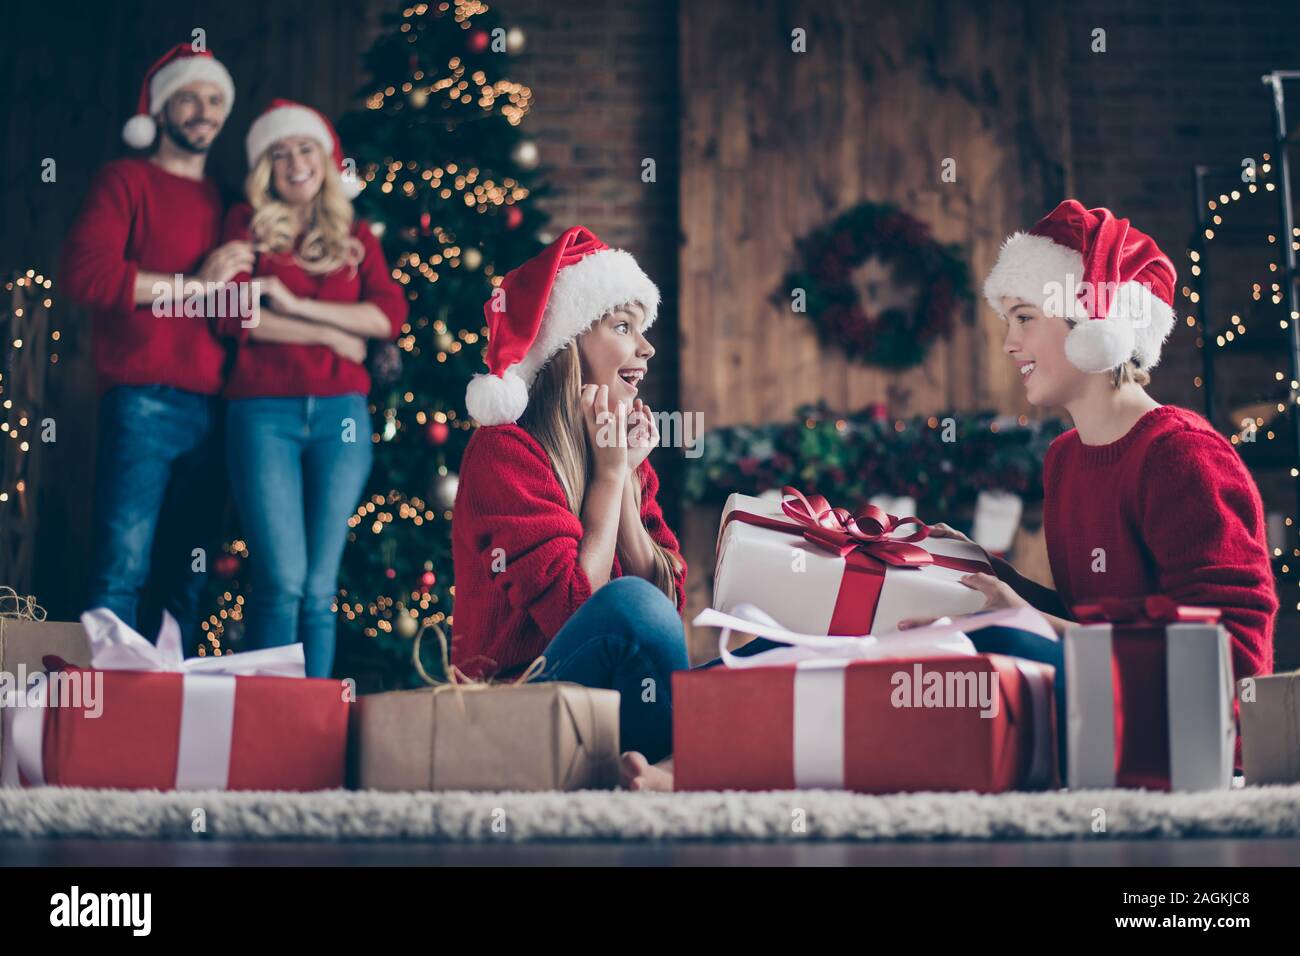 Profil Foto der vollständigen Familie Eltern zwei Kinder den Austausch von x-mas Geschenke sitzen gemütlich eingerichtet, in der Nähe von Garland Licht Neujahr Baum tragen Stockfoto